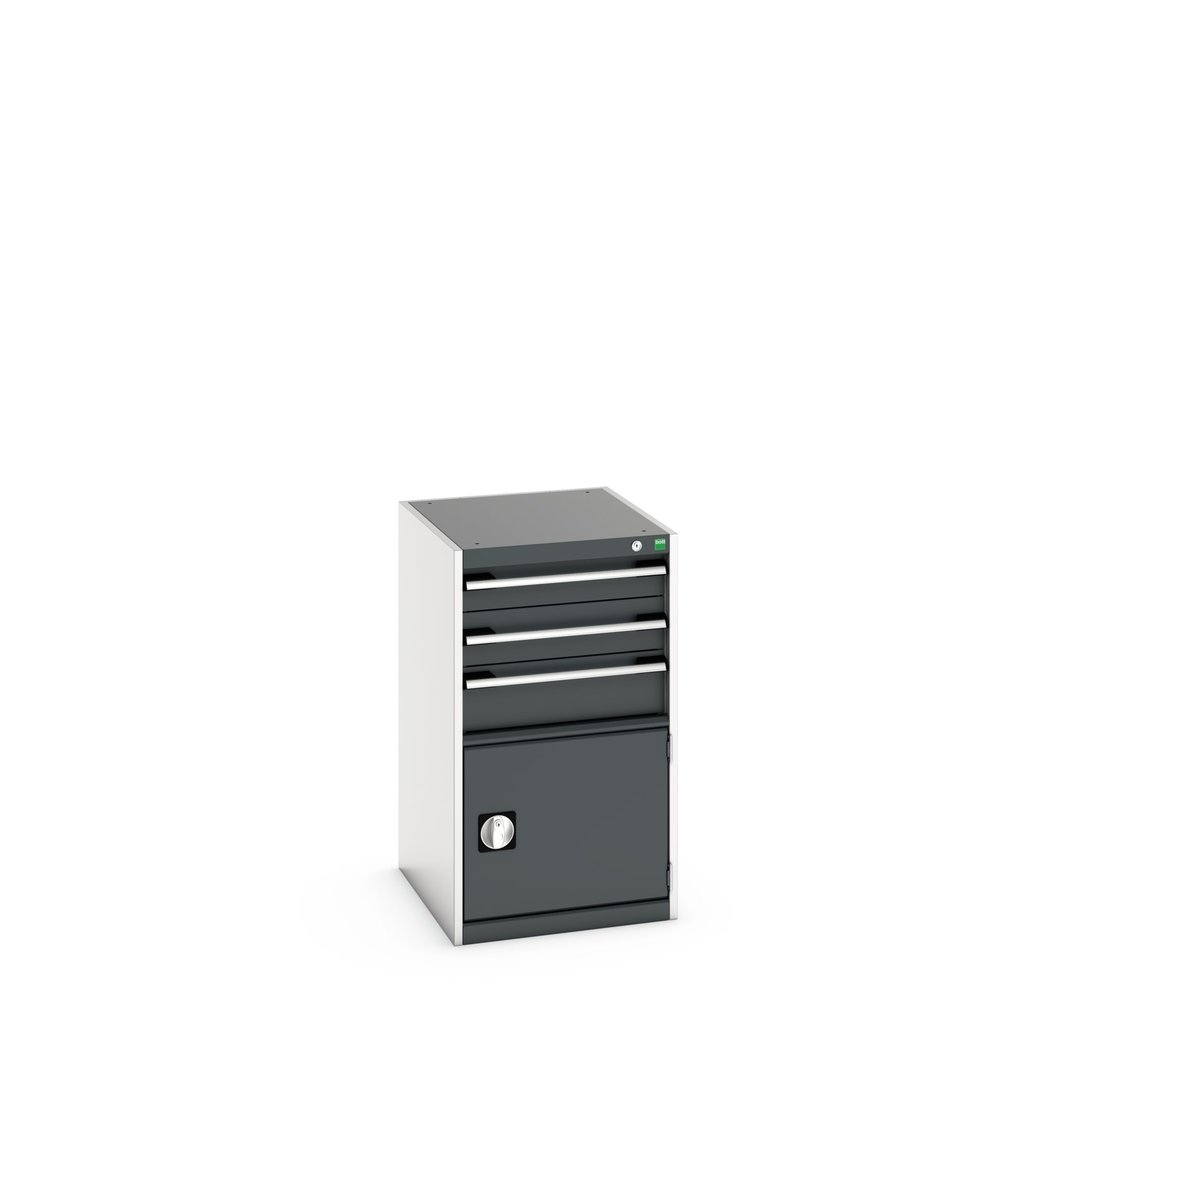 40018043. - cubio drawer-door cabinet